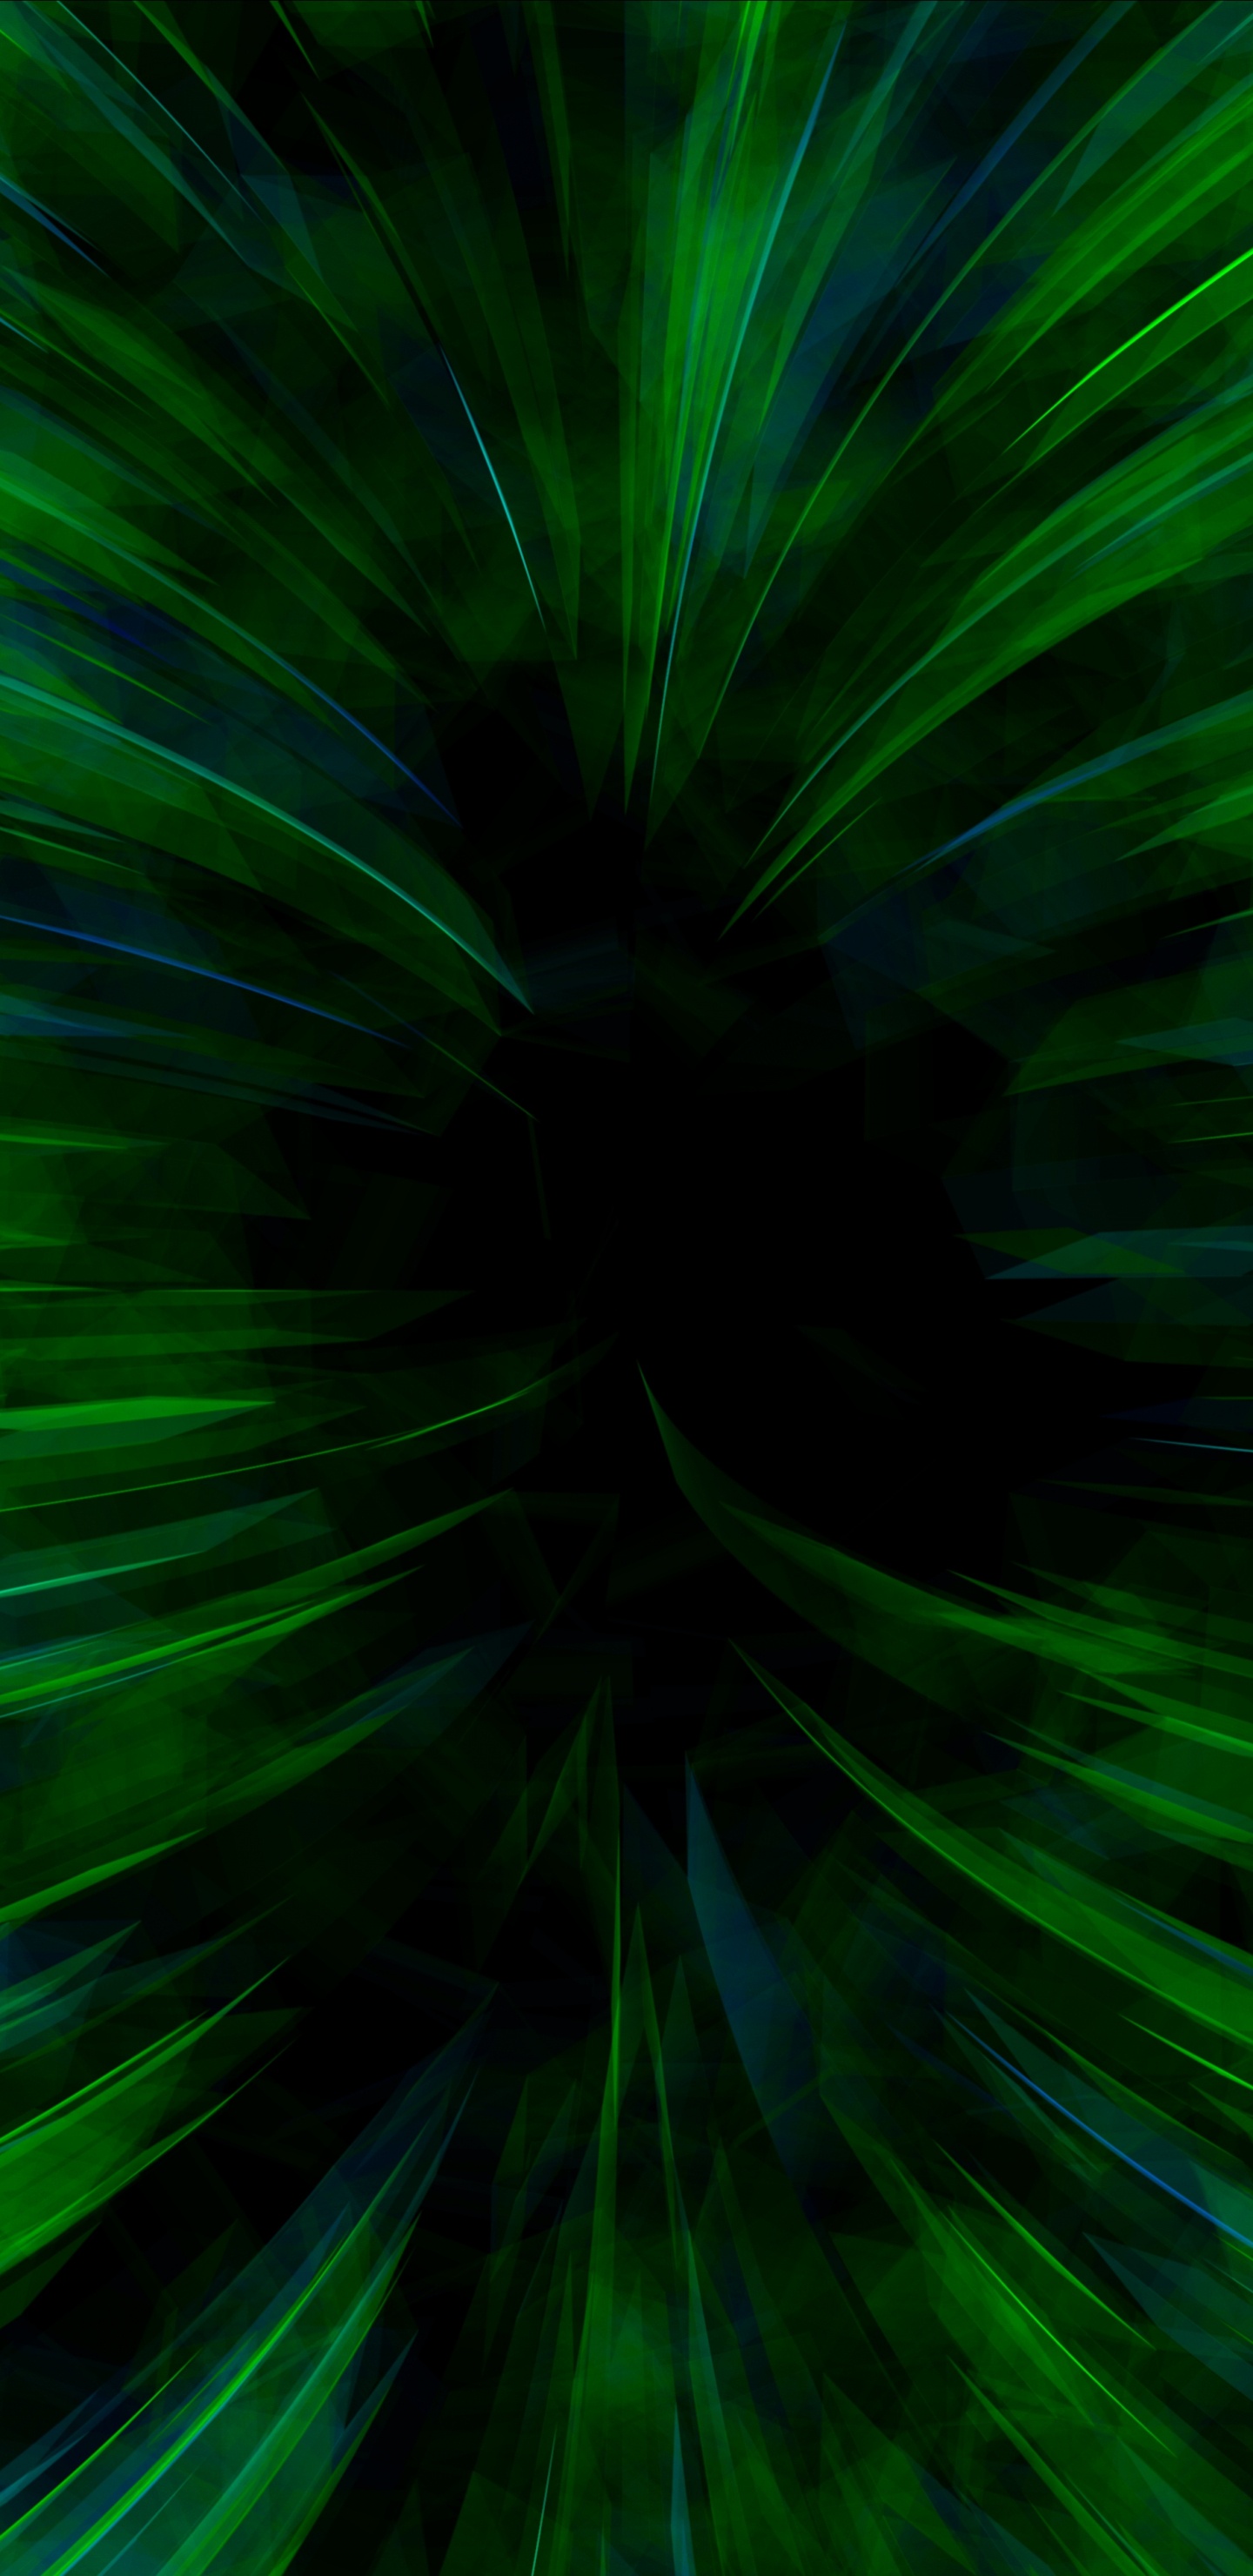 Papel Tapiz Digital de Luz Verde y Blanca. Wallpaper in 1440x2960 Resolution